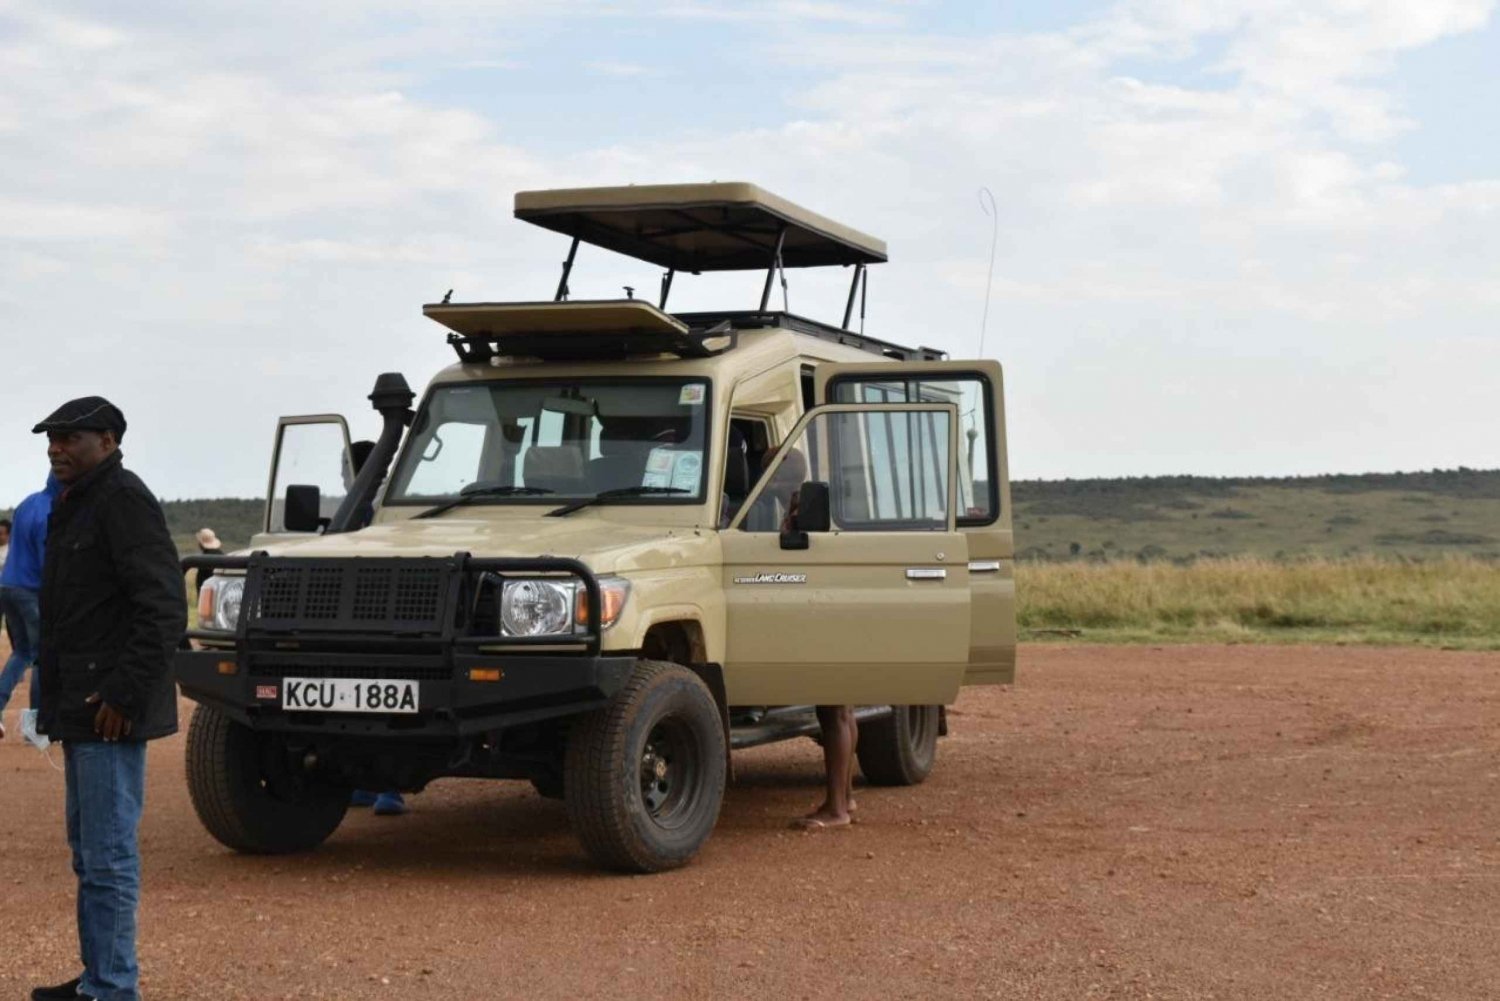 De Nairóbi: Safári de 3 dias em grupo pequeno no Maasai Mara em veículo com tração nas quatro rodas